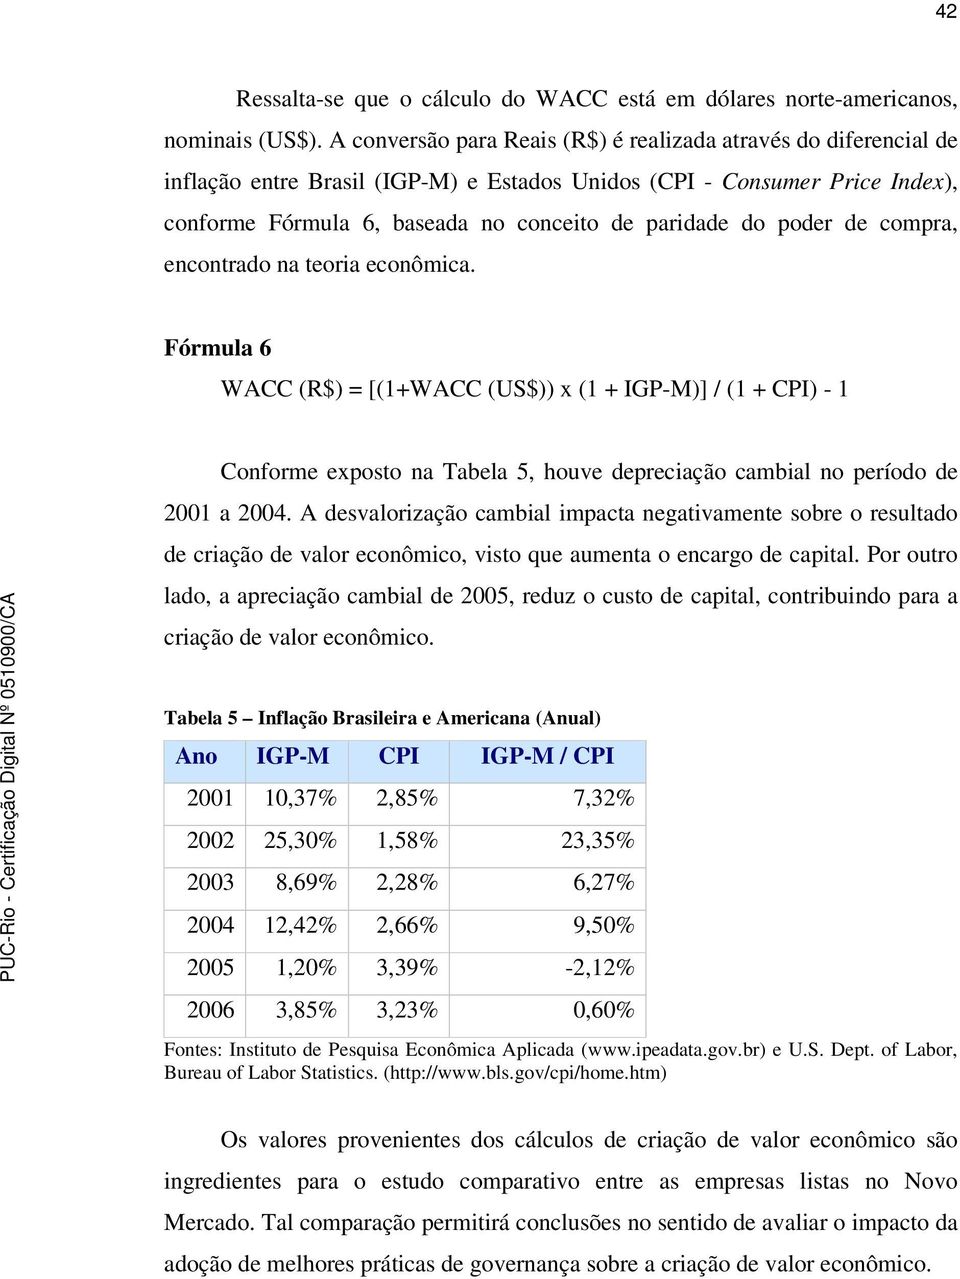 poder de compra, encontrado na teoria econômica. Fórmula 6 WACC (R$) = [(1+WACC (US$)) x (1 + IGP-M)] / (1 + CPI) - 1 Conforme exposto na Tabela 5, houve depreciação cambial no período de 2001 a 2004.